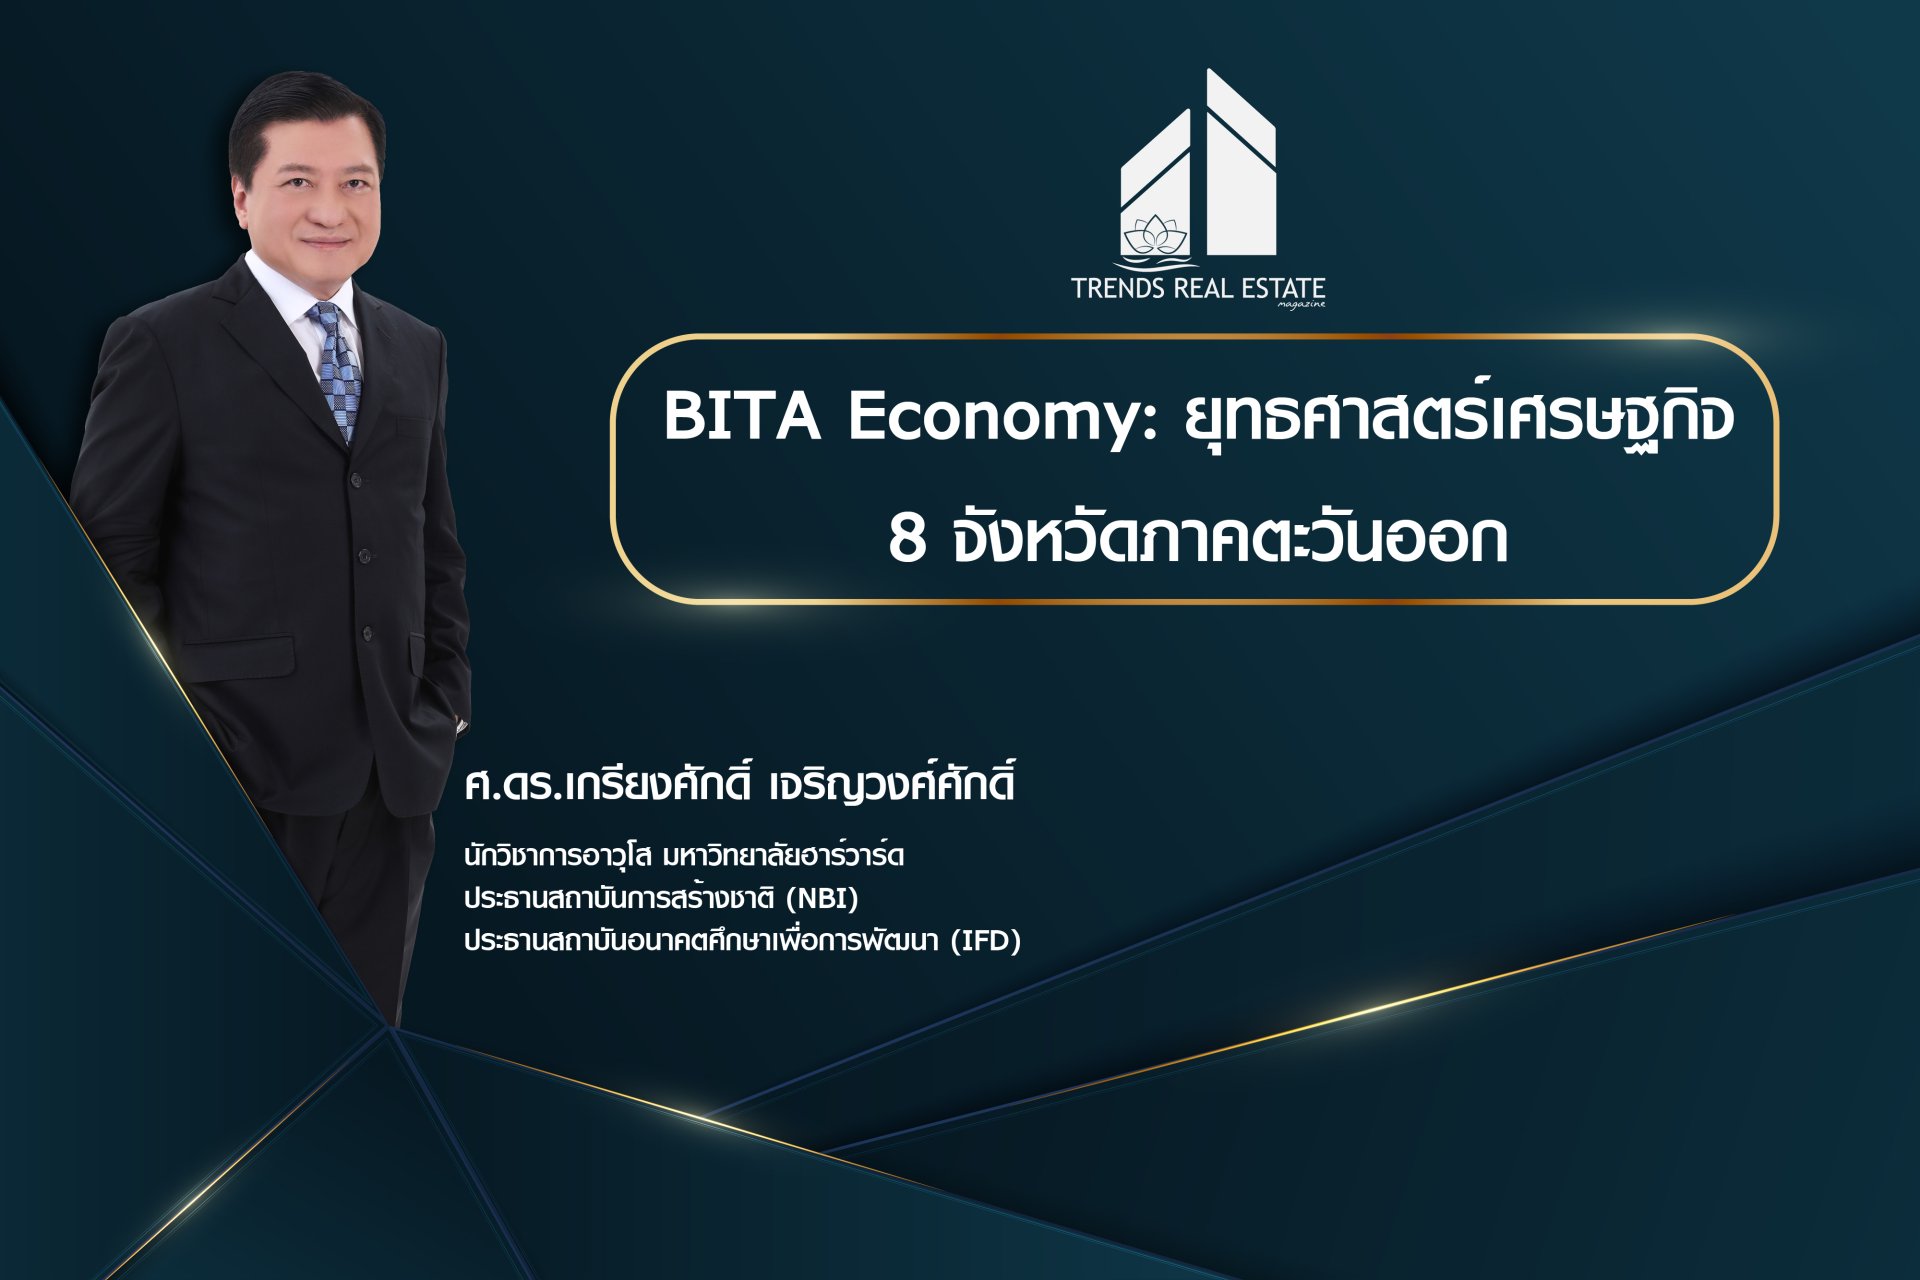 BITA Economy: ยุทธศาสตร์เศรษฐกิจ 8 จังหวัดภาคตะวันออก